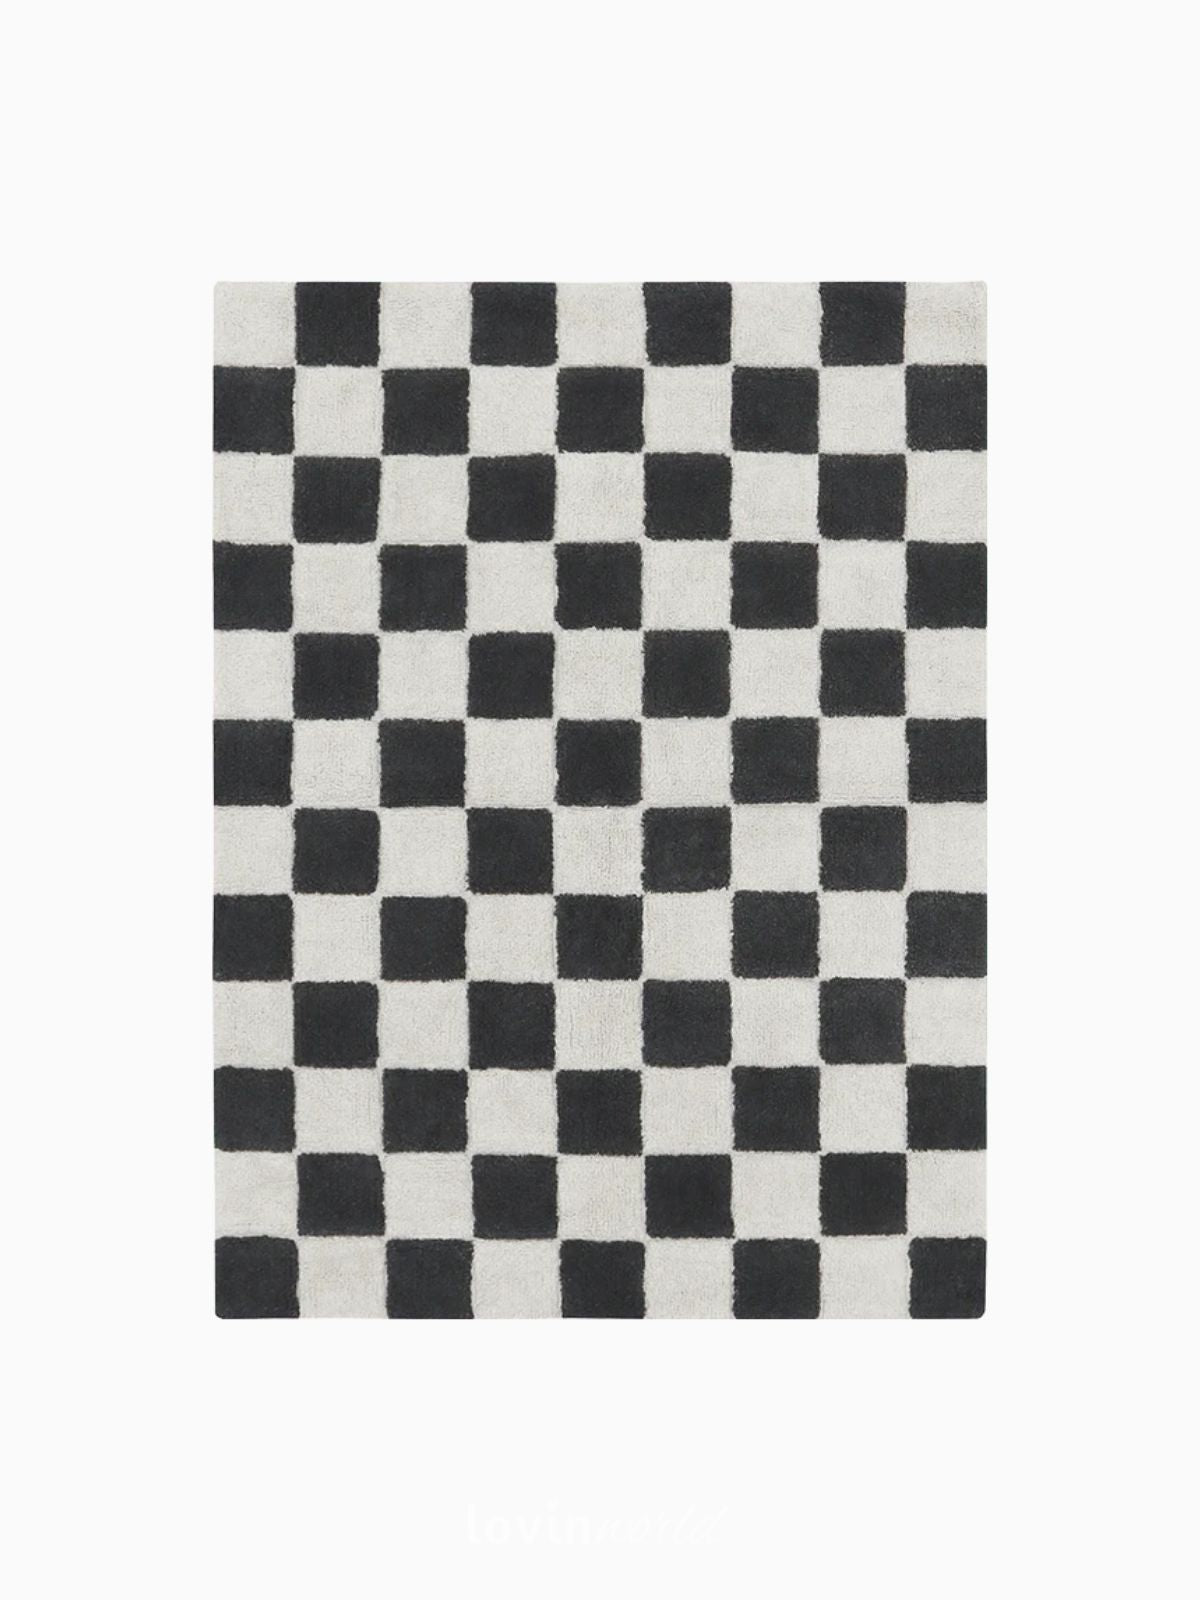 Tappeto lavabile per bambini Piastrelle Cucina in colore grigio scuro 120x160 cm.-1